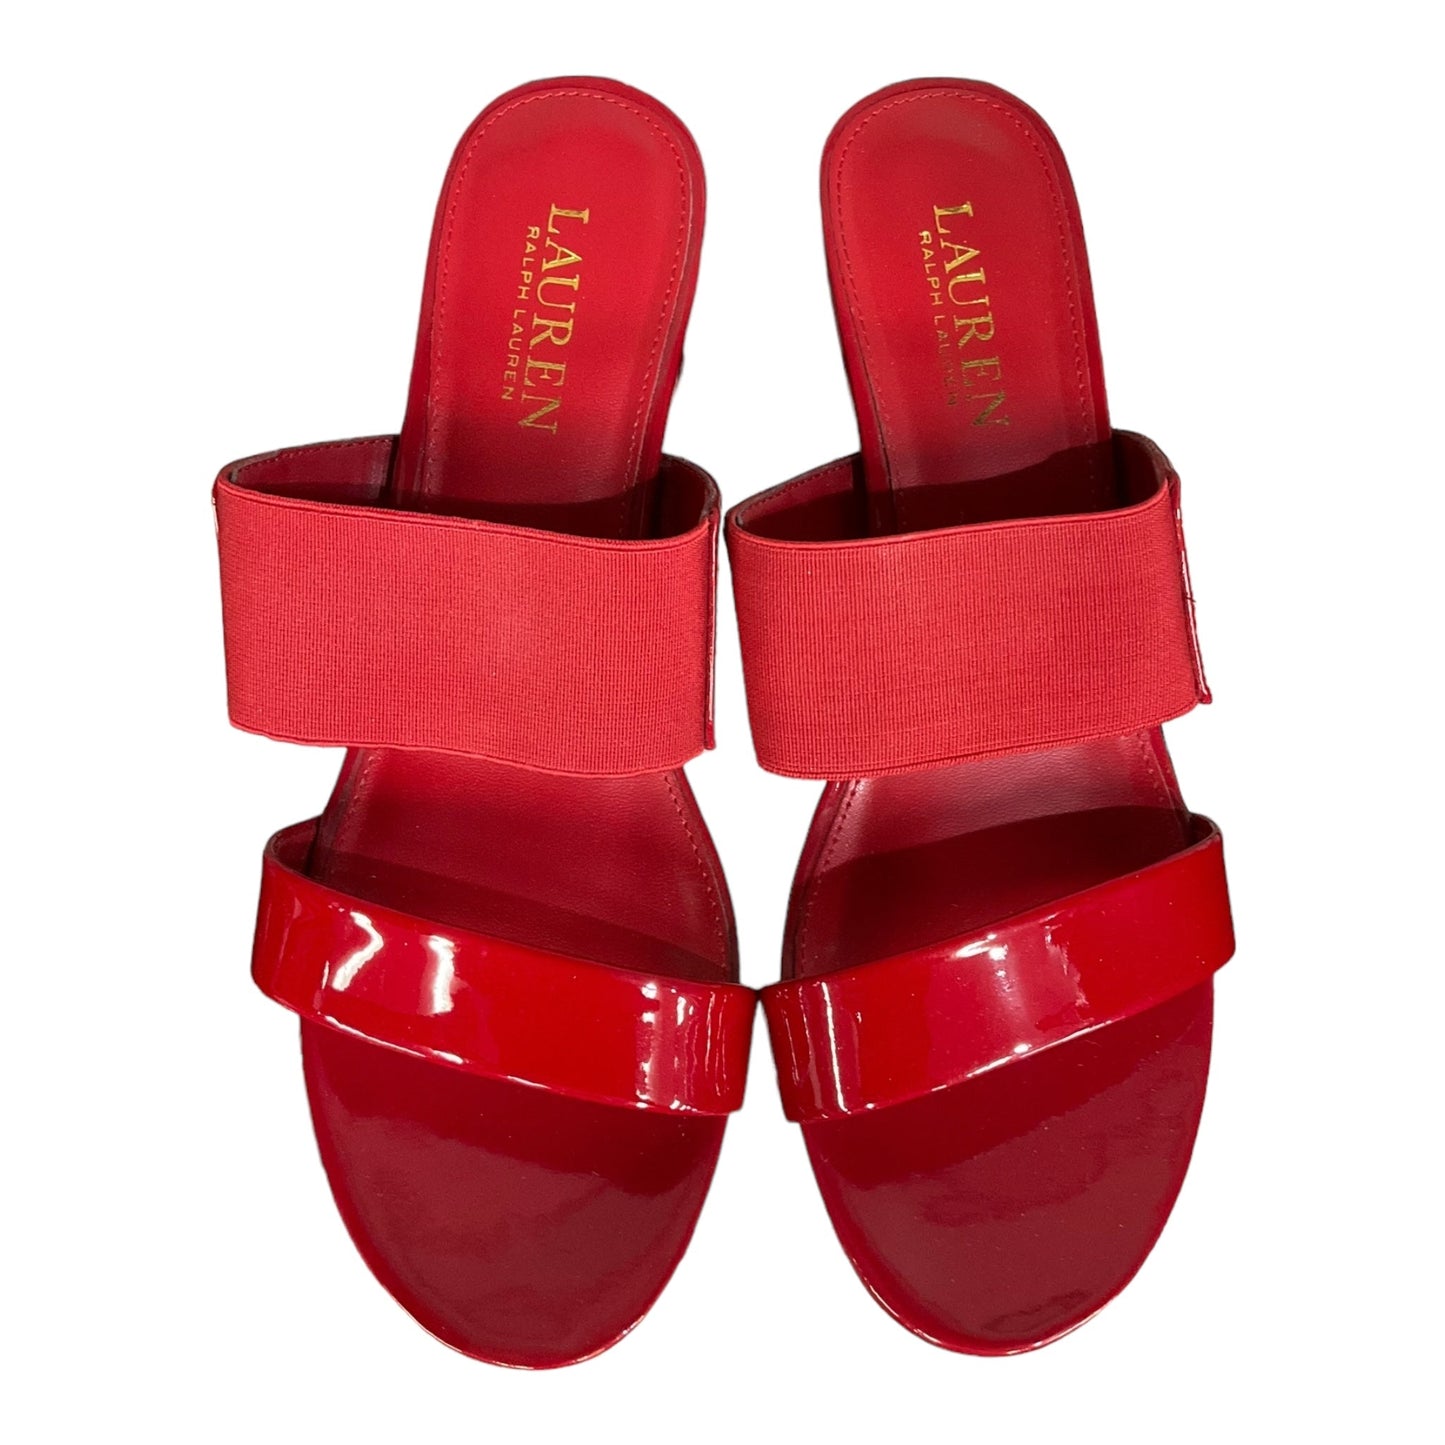 Red Sandals Heels Wedge Lauren By Ralph Lauren, Size 7.5